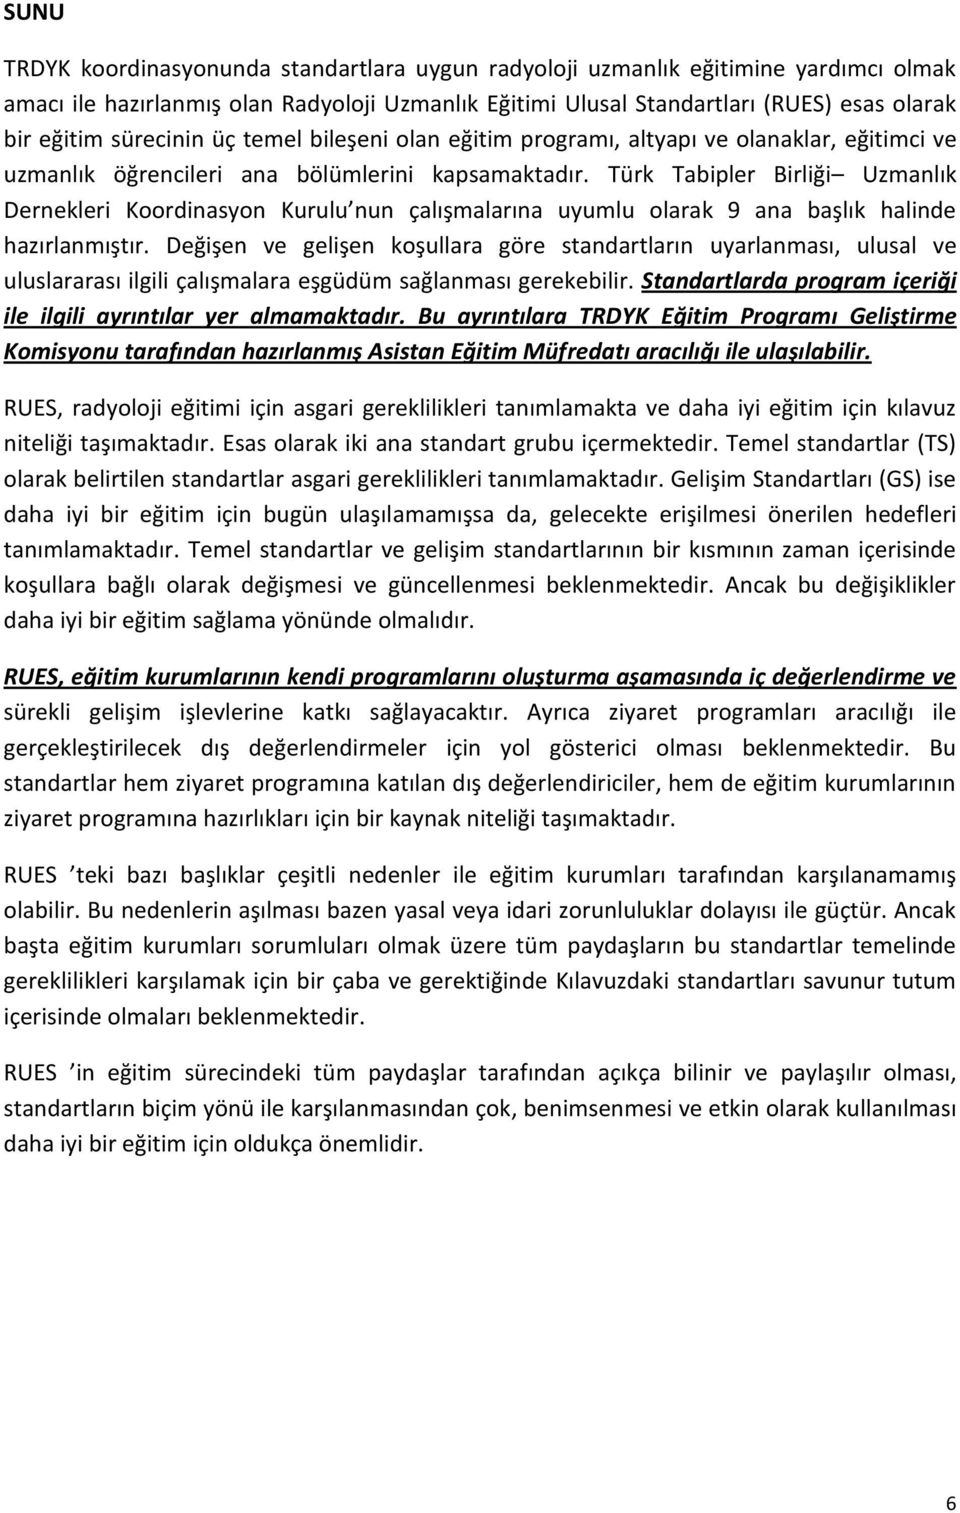 Türk Tabipler Birliği Uzmanlık Dernekleri Koordinasyon Kurulu nun çalışmalarına uyumlu olarak 9 ana başlık halinde hazırlanmıştır.